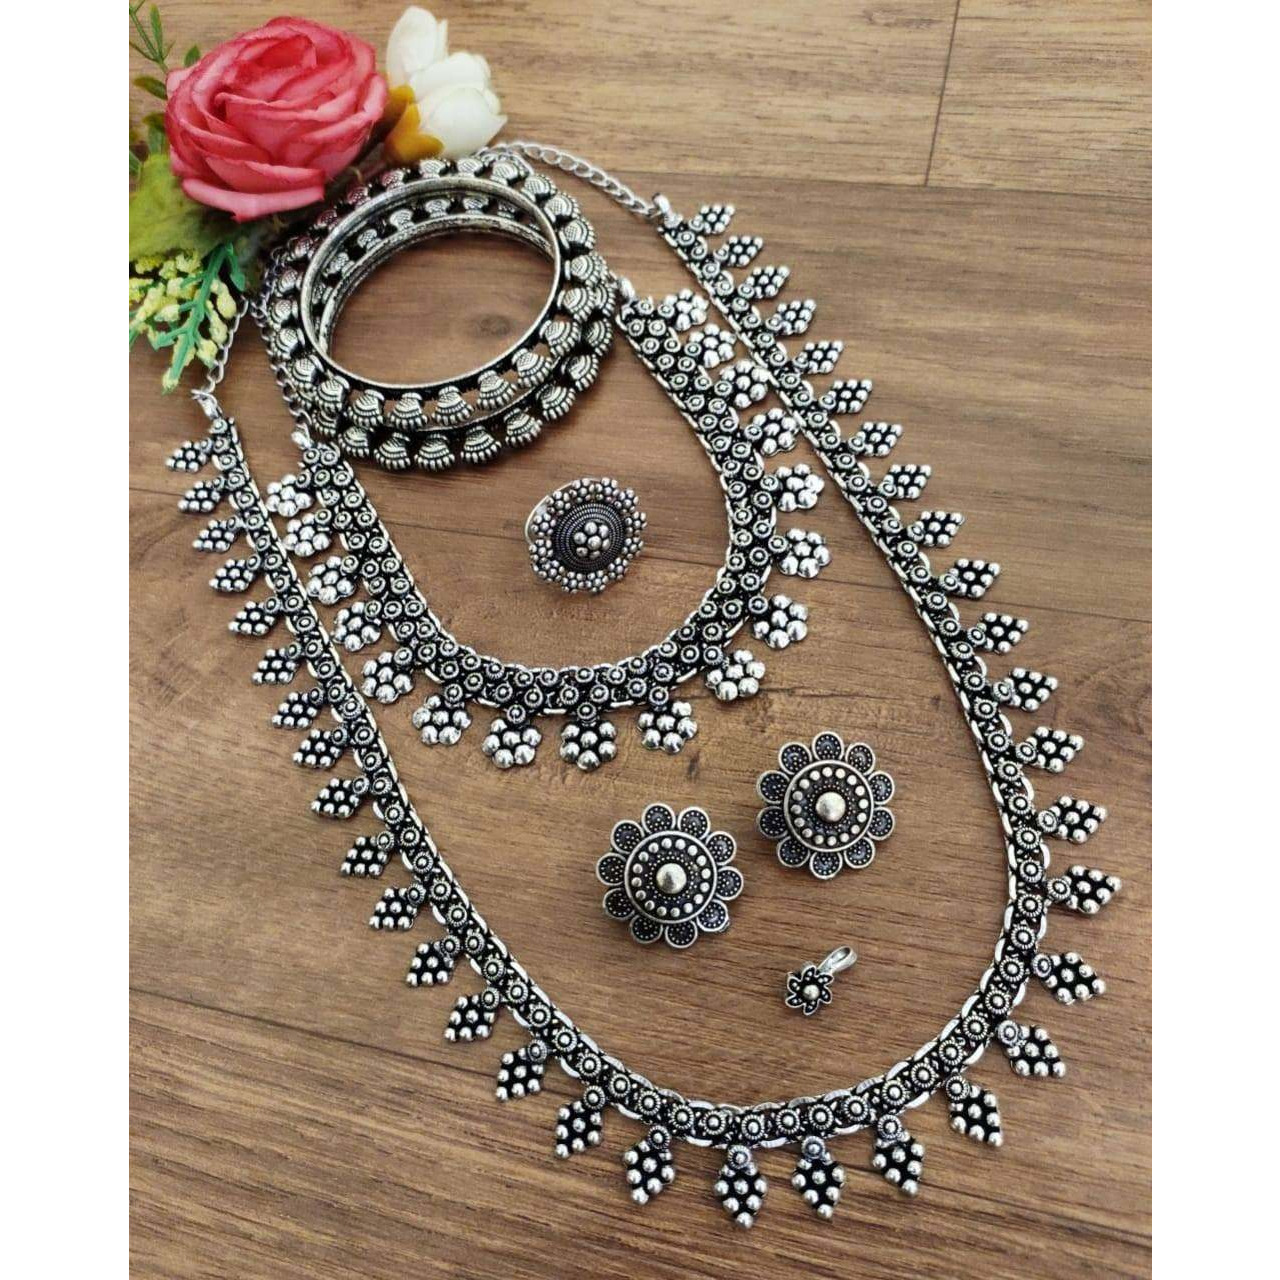 Oxidised necklace set, Indian oxidised jewelry set, antique jewelry, handmade jewelry, temple jewelry set of 6, gypsy set, Boho tribal jewel